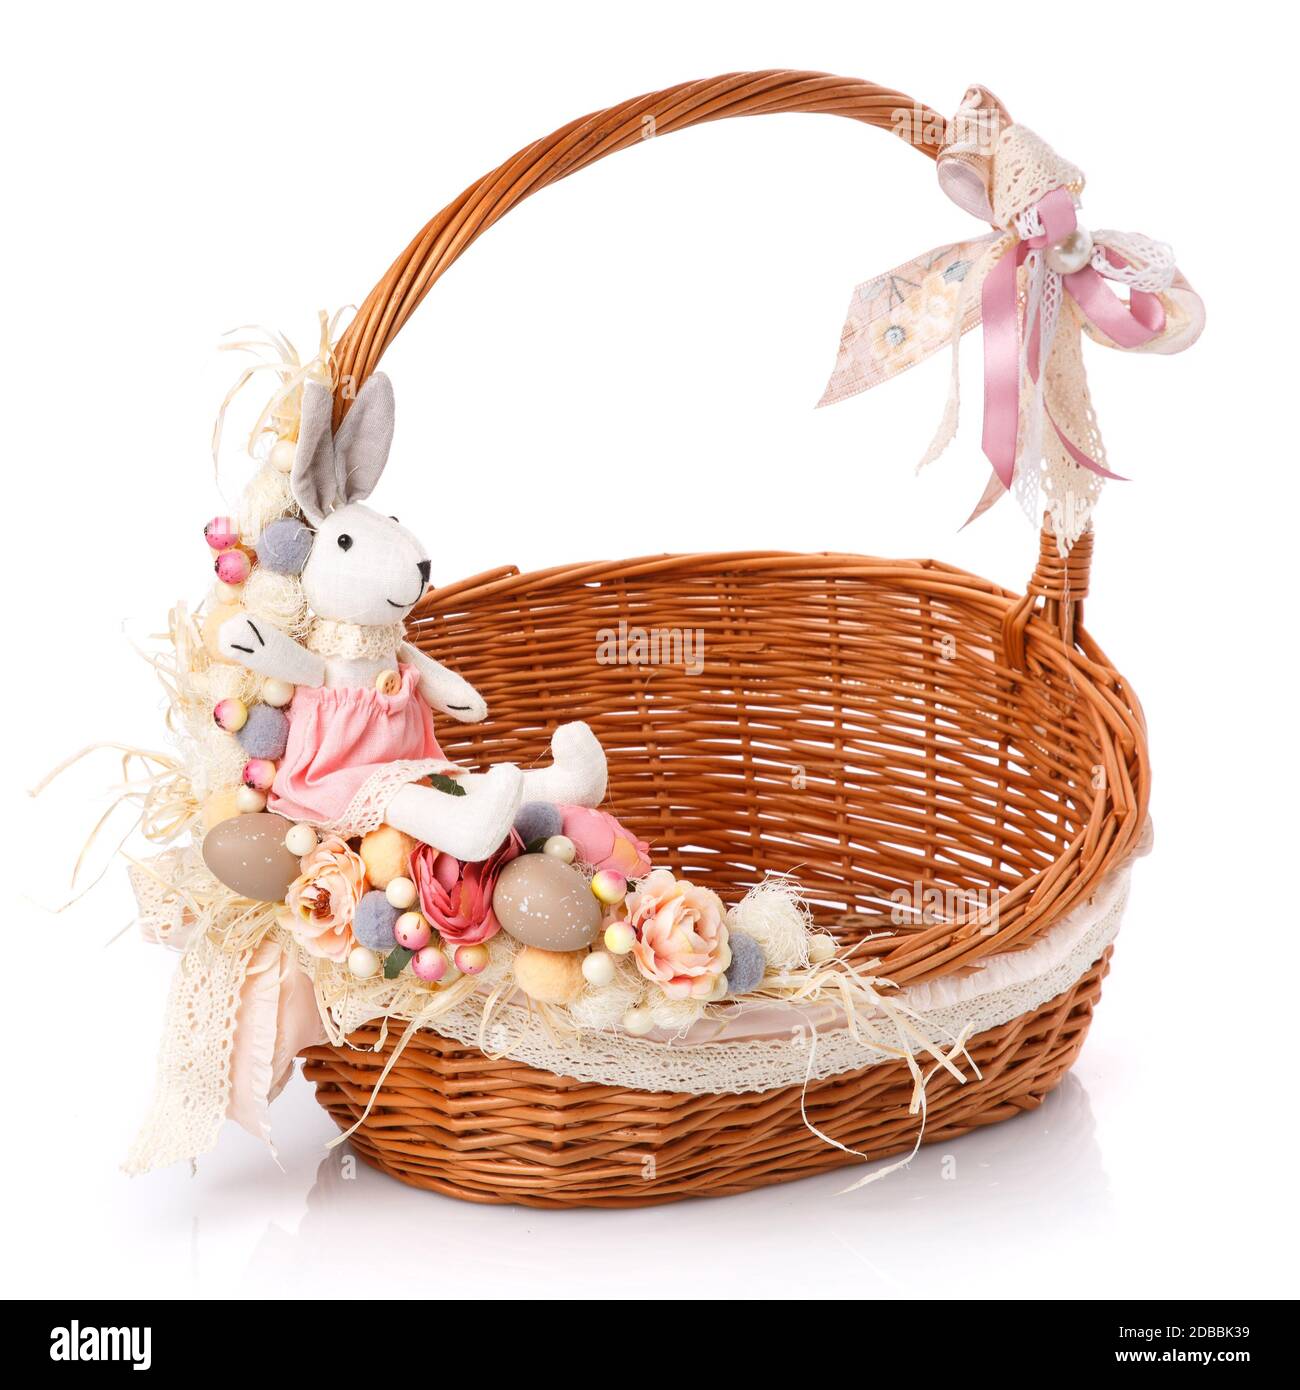 Un petit panier pour la fête de Pâques. Décoration délicate de fleurs, de  baies, d'œufs de caille décoratifs, de filet et d'un petit lapin en  peluche. Panier de Pâques pour ch Photo